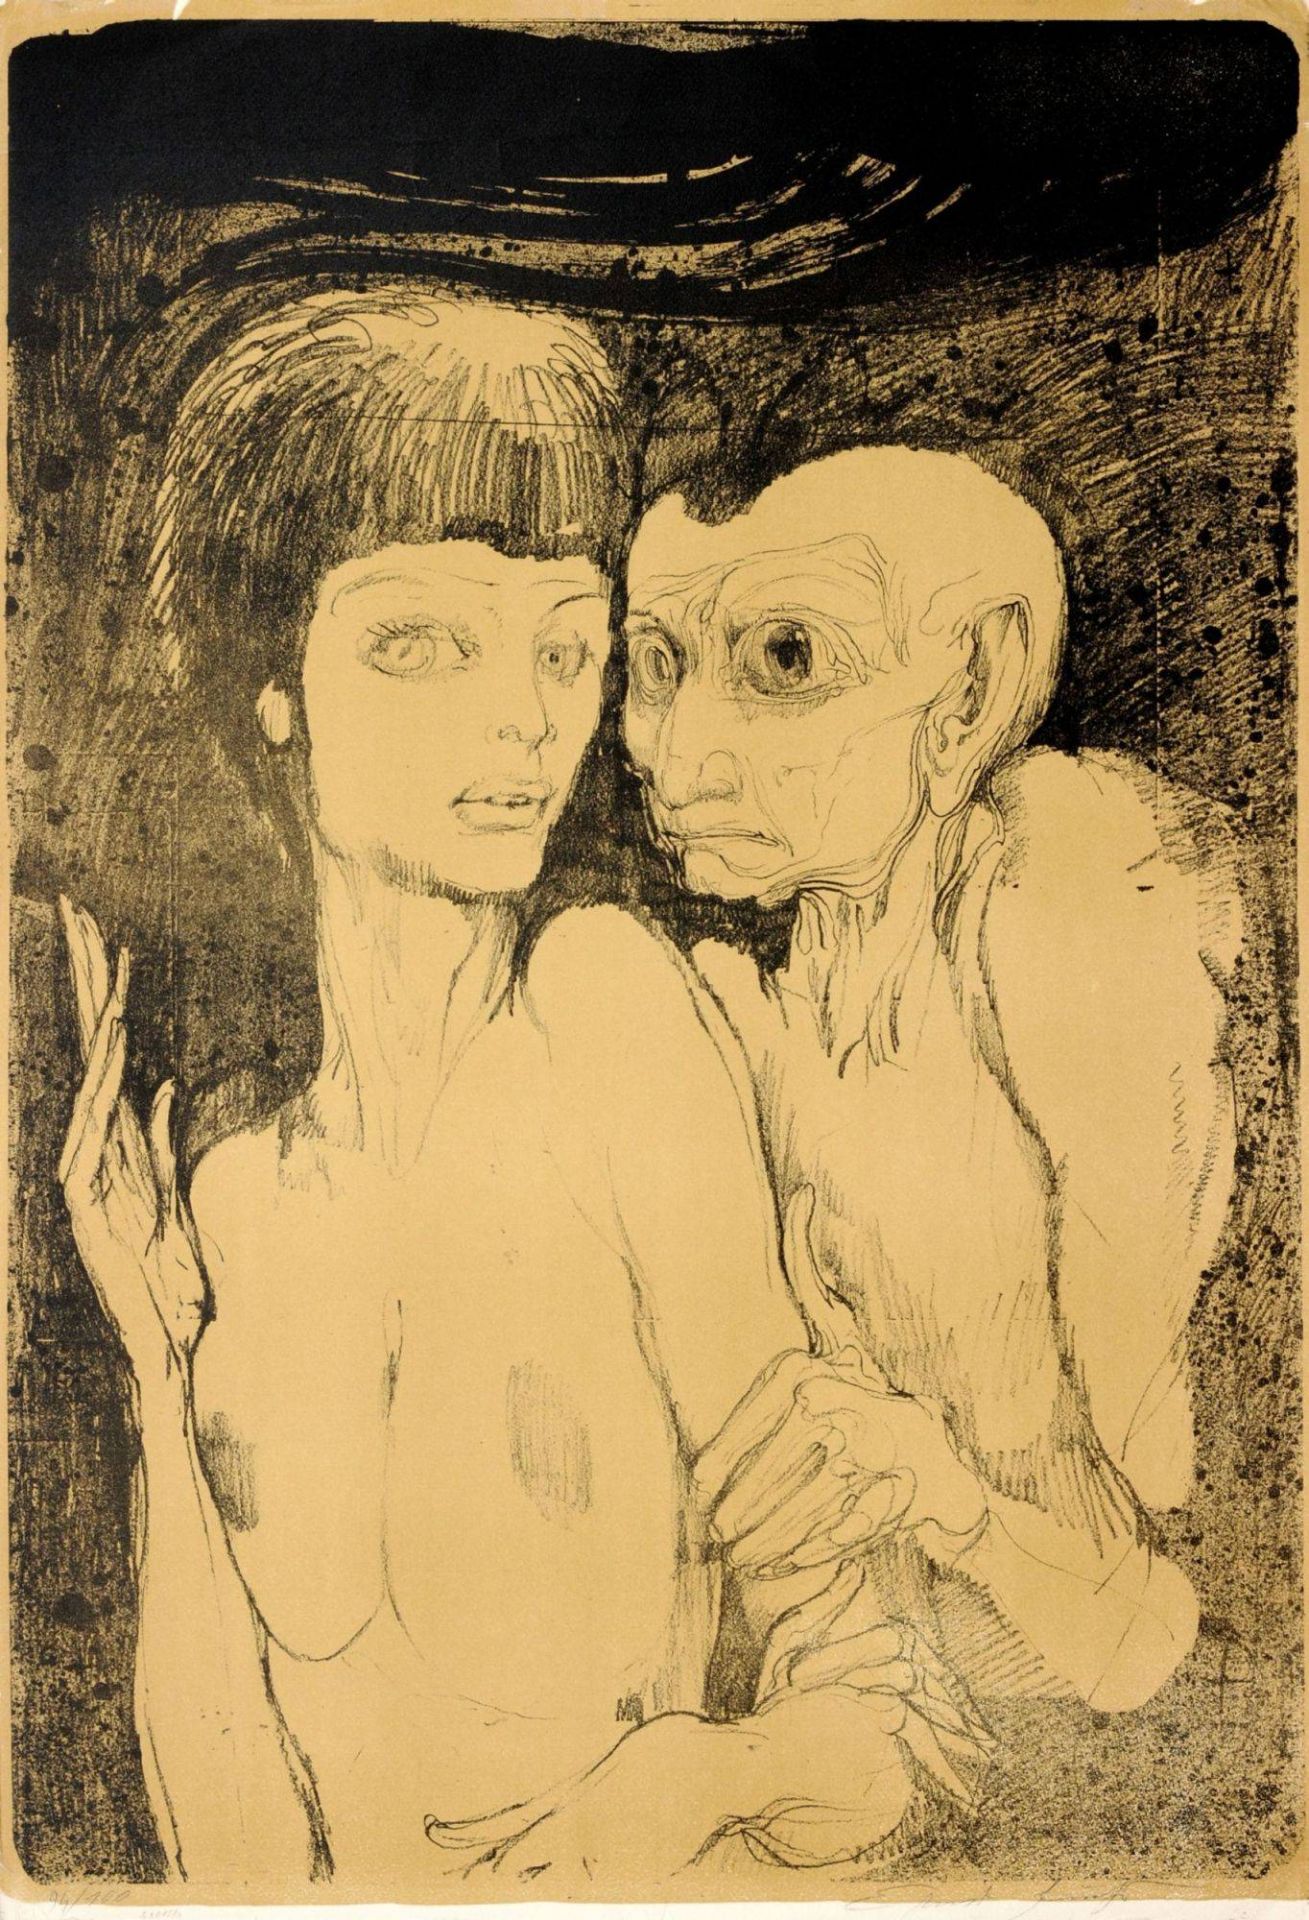 Ernst Fuchs "Das ungleiche Paar". 1967.